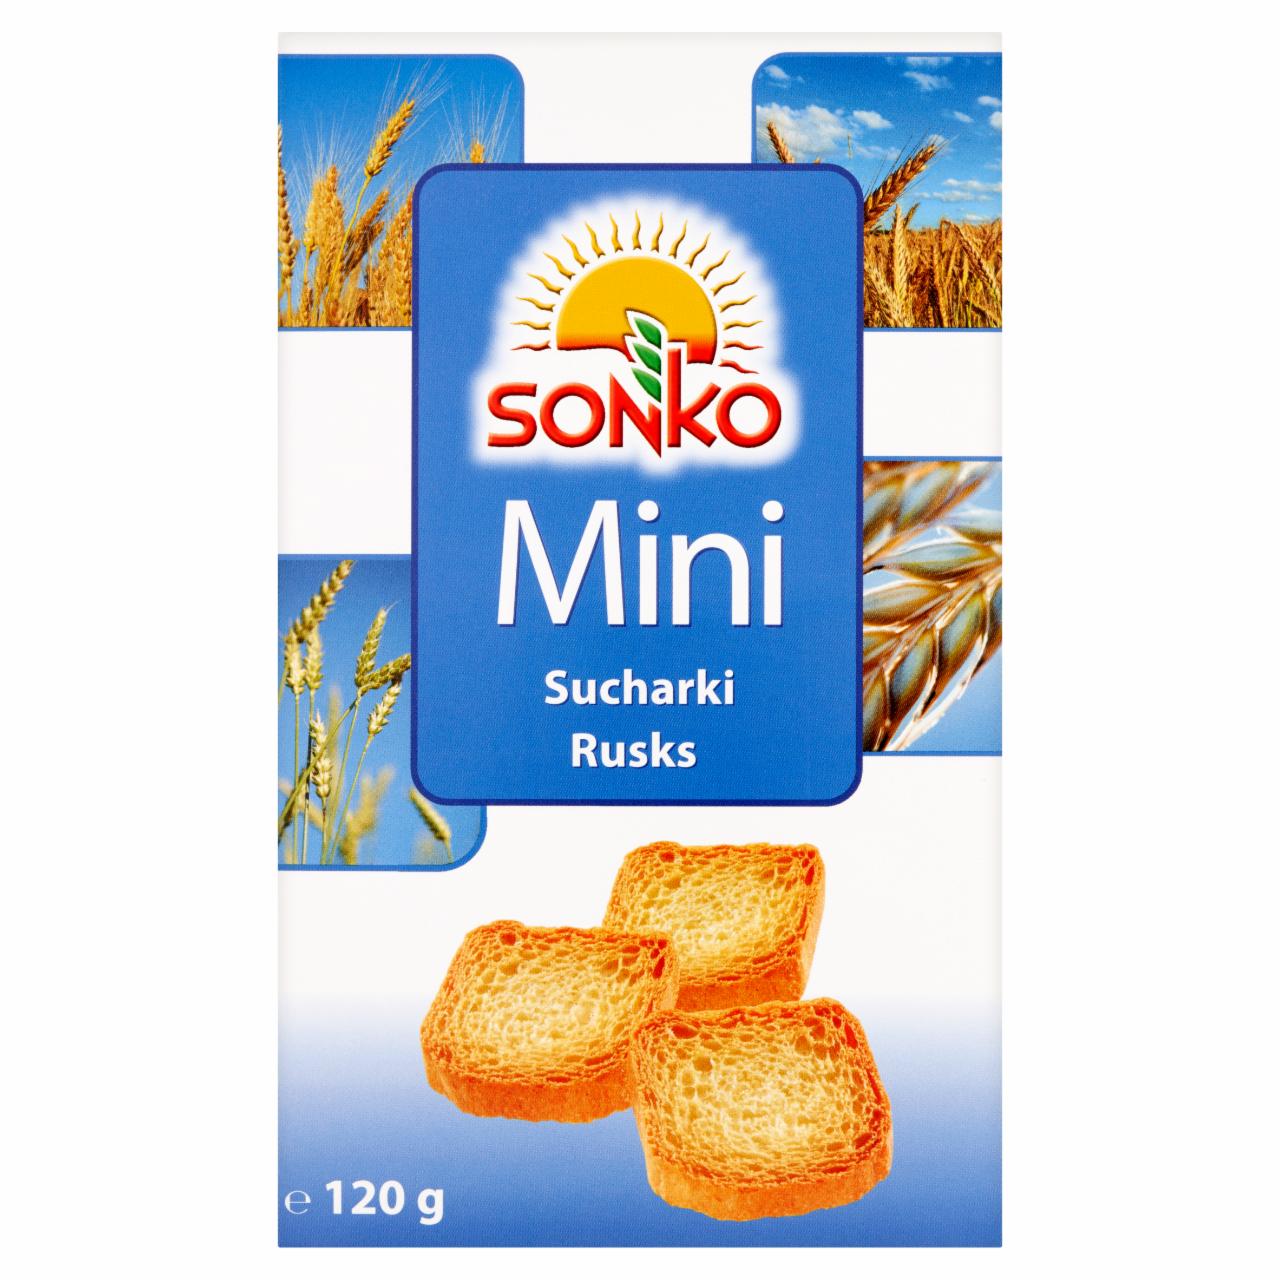 Zdjęcia - Sonko Mini sucharki 120 g (60 sztuk)